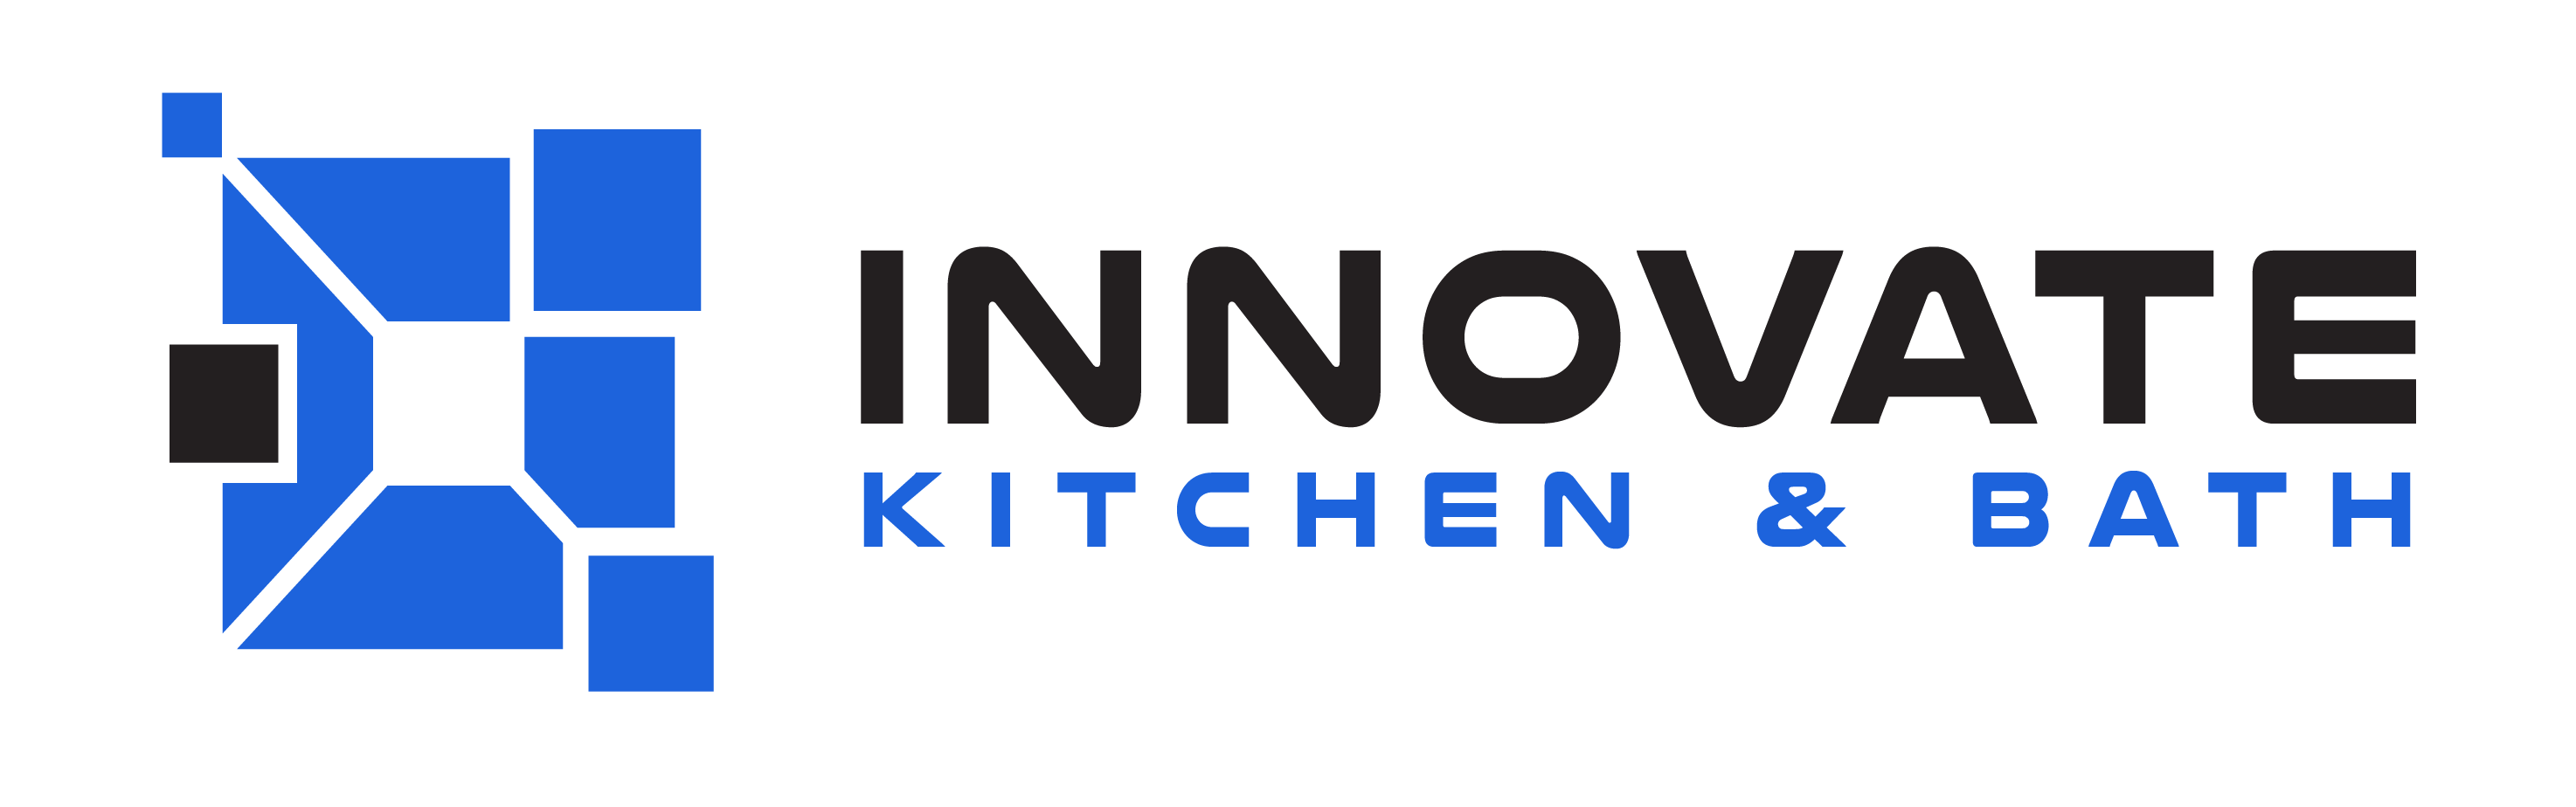 Innovate-Logo